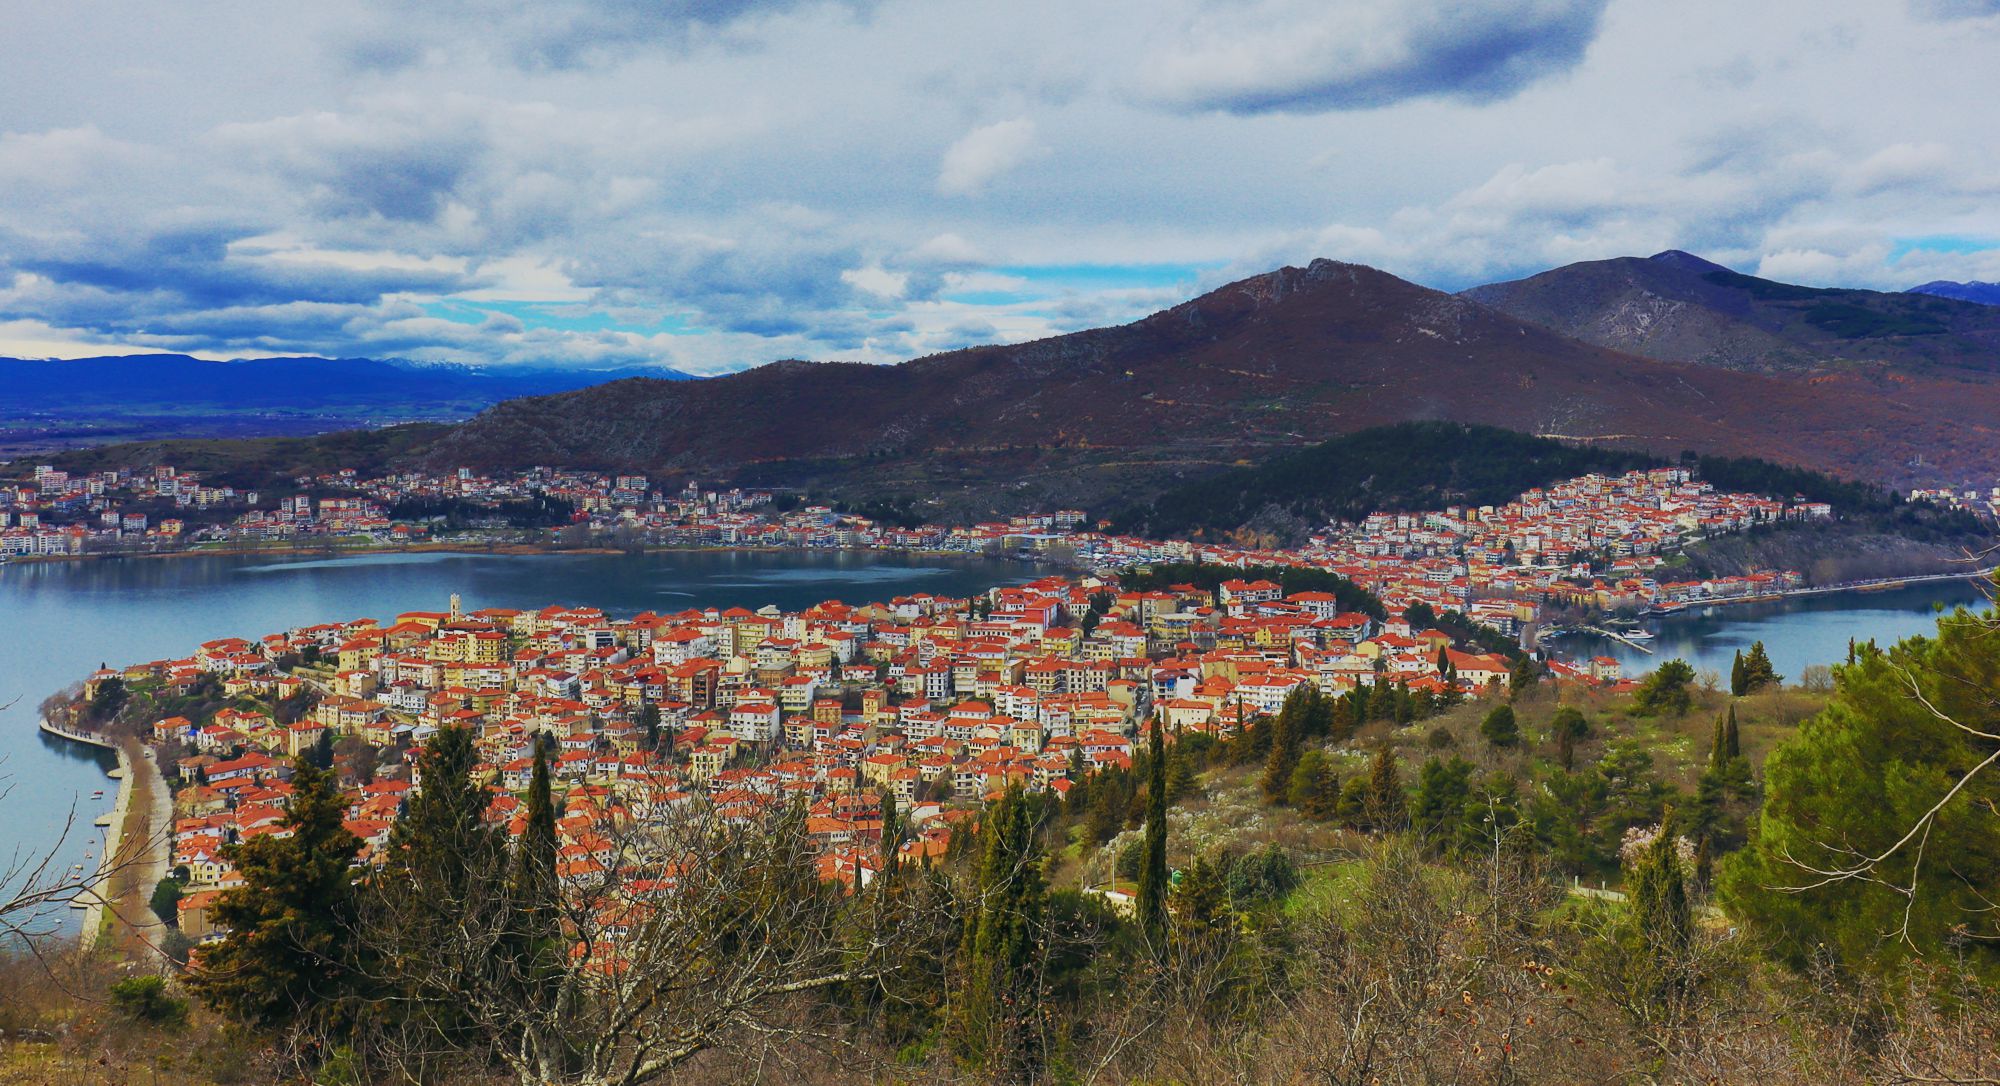 Τα μονοπάτια της Χερσονήσου Καστοριάς: Άποψη της Καστοριάς, από το τέλος της διαδρομής Προφήτης Ηλίας-Άγιος Αθανάσιος